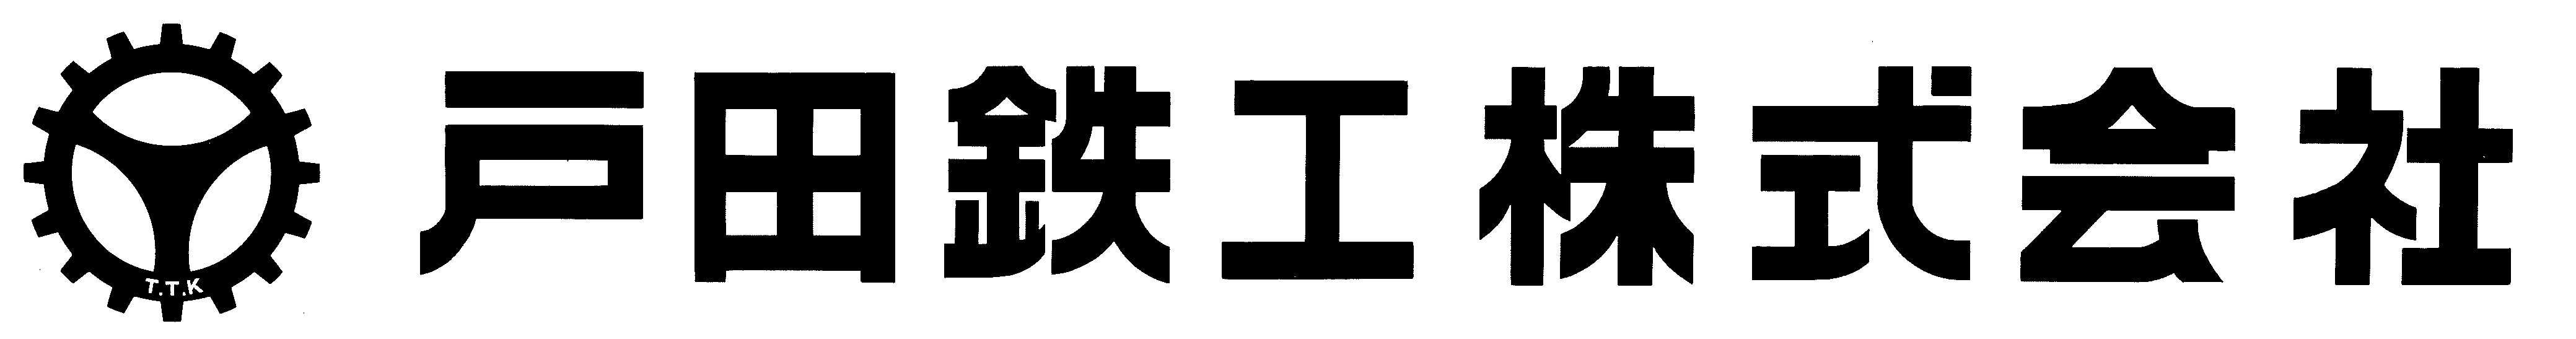 ロゴ:戸田鉄工株式会社